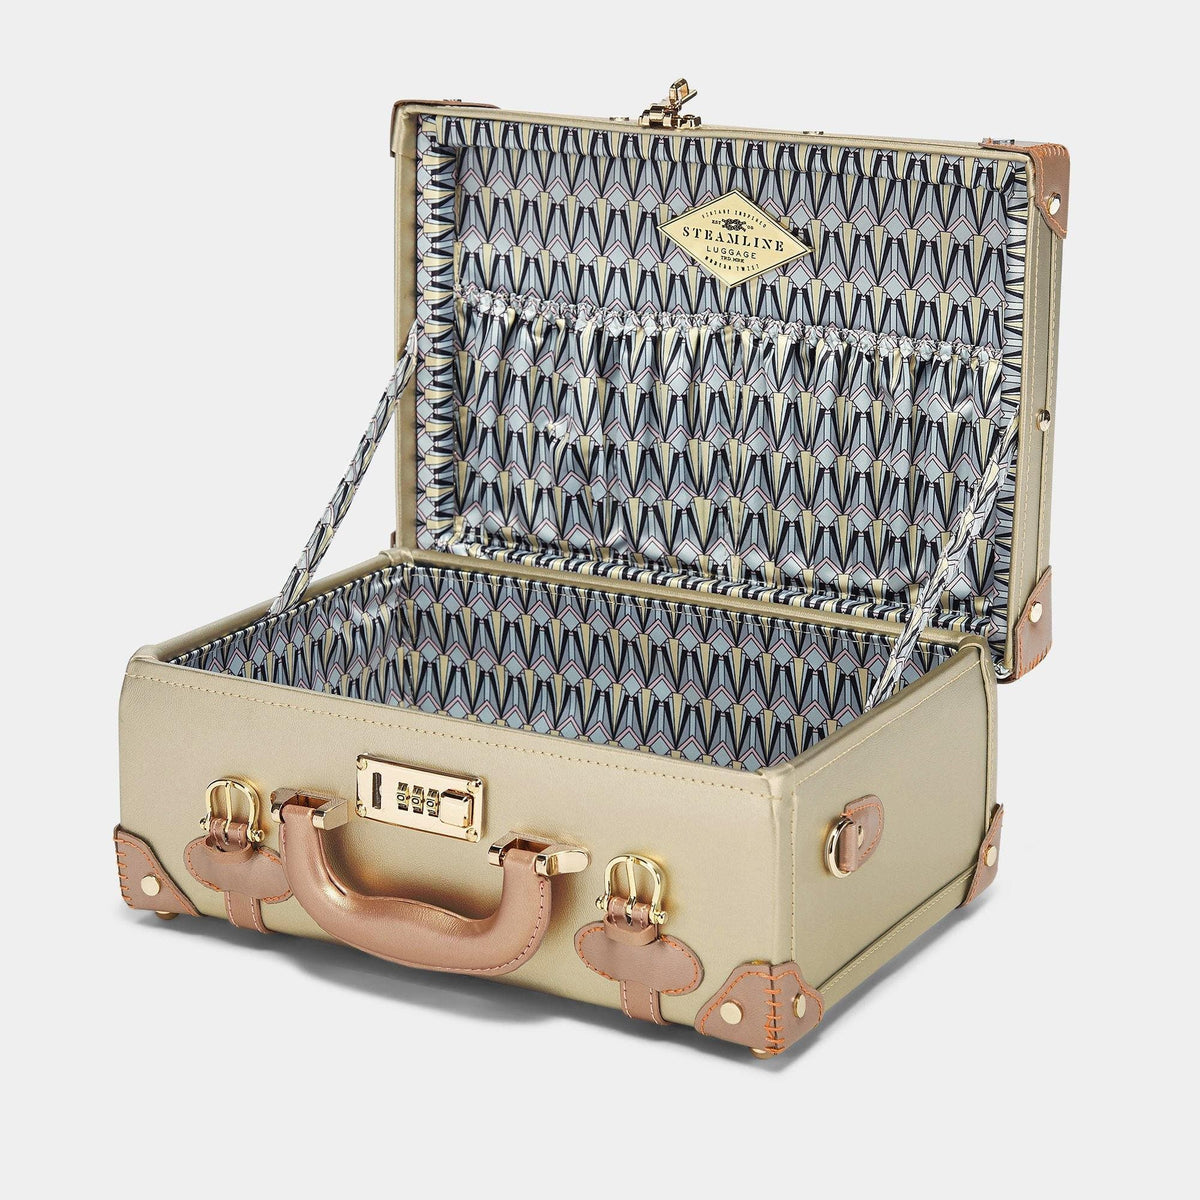 The Alchemist - Briefcase Briefcase Steamline Luggage 